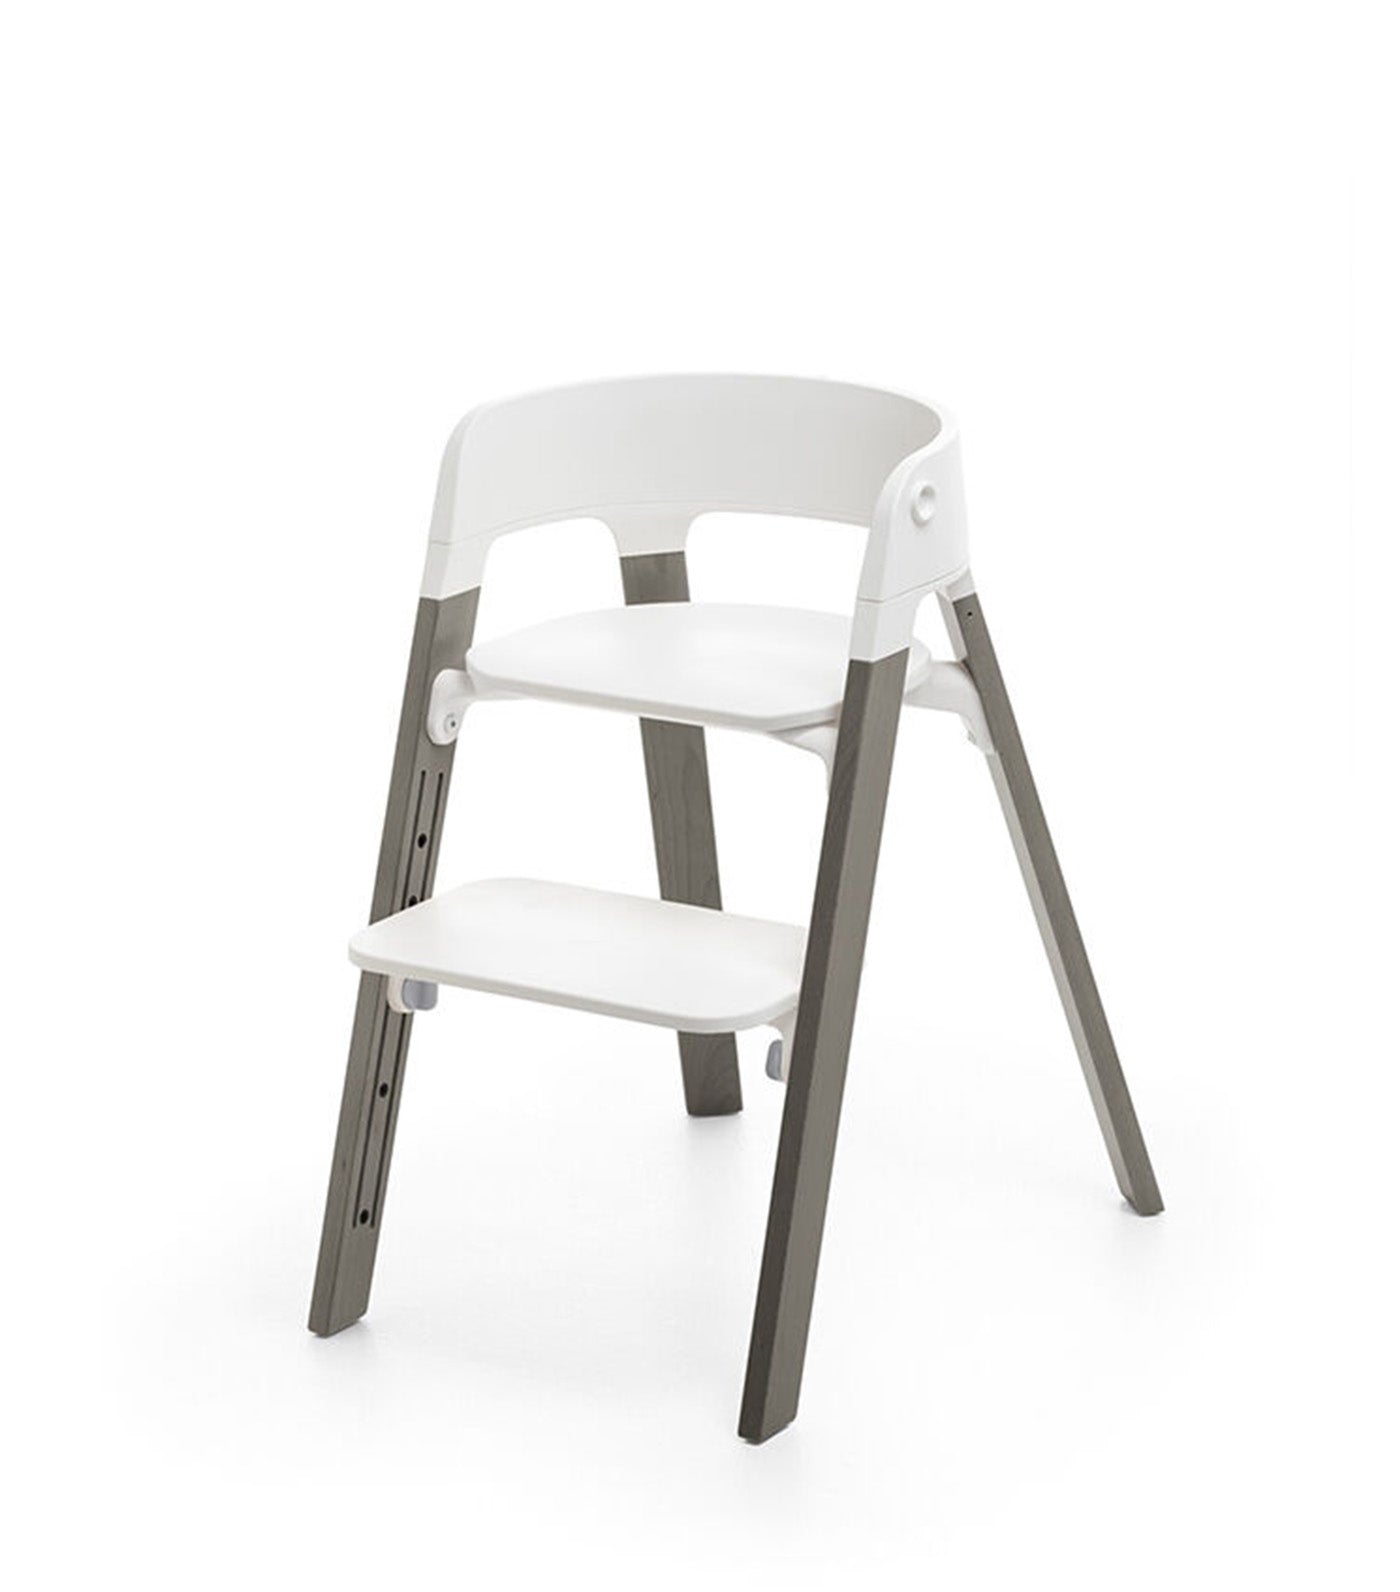 Steps™ Chair White/Hazy Gray